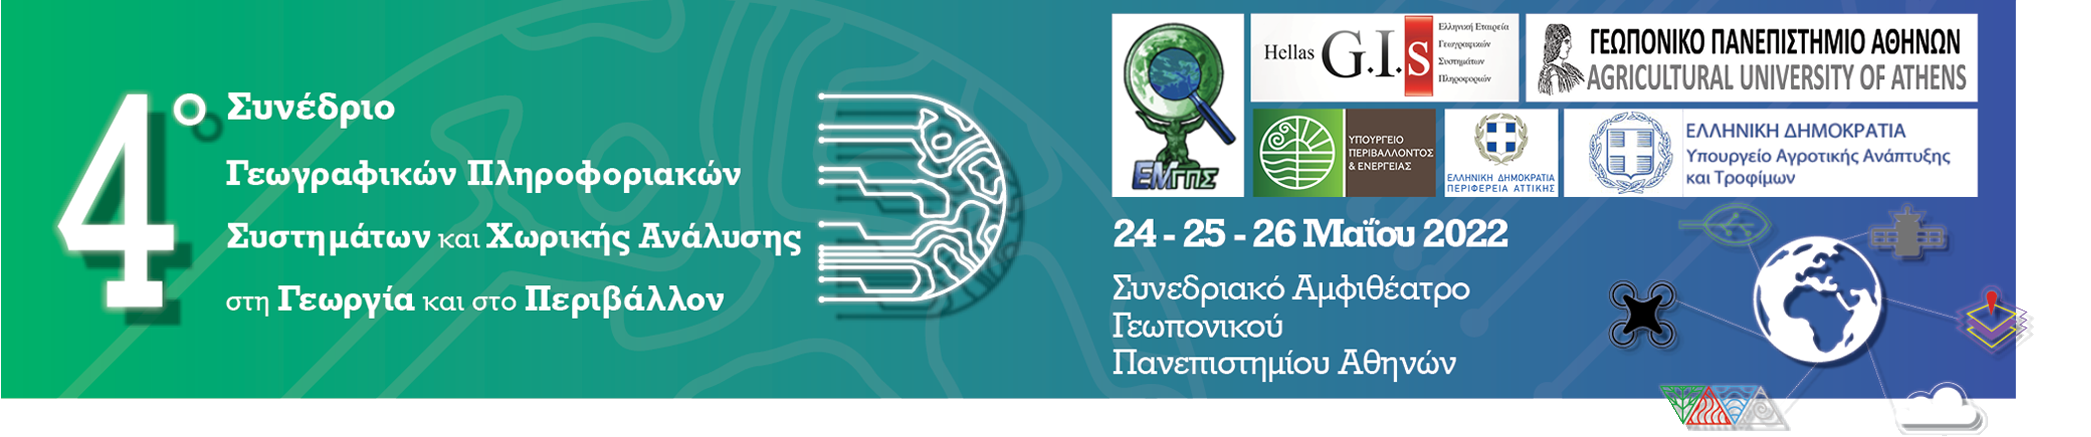 4ο Συνέδριο Γεωγραφικών Πληροφοριακών Συστημάτων και Χωρικής Ανάλυσης στη Γεωργία και στο Περιβάλλον